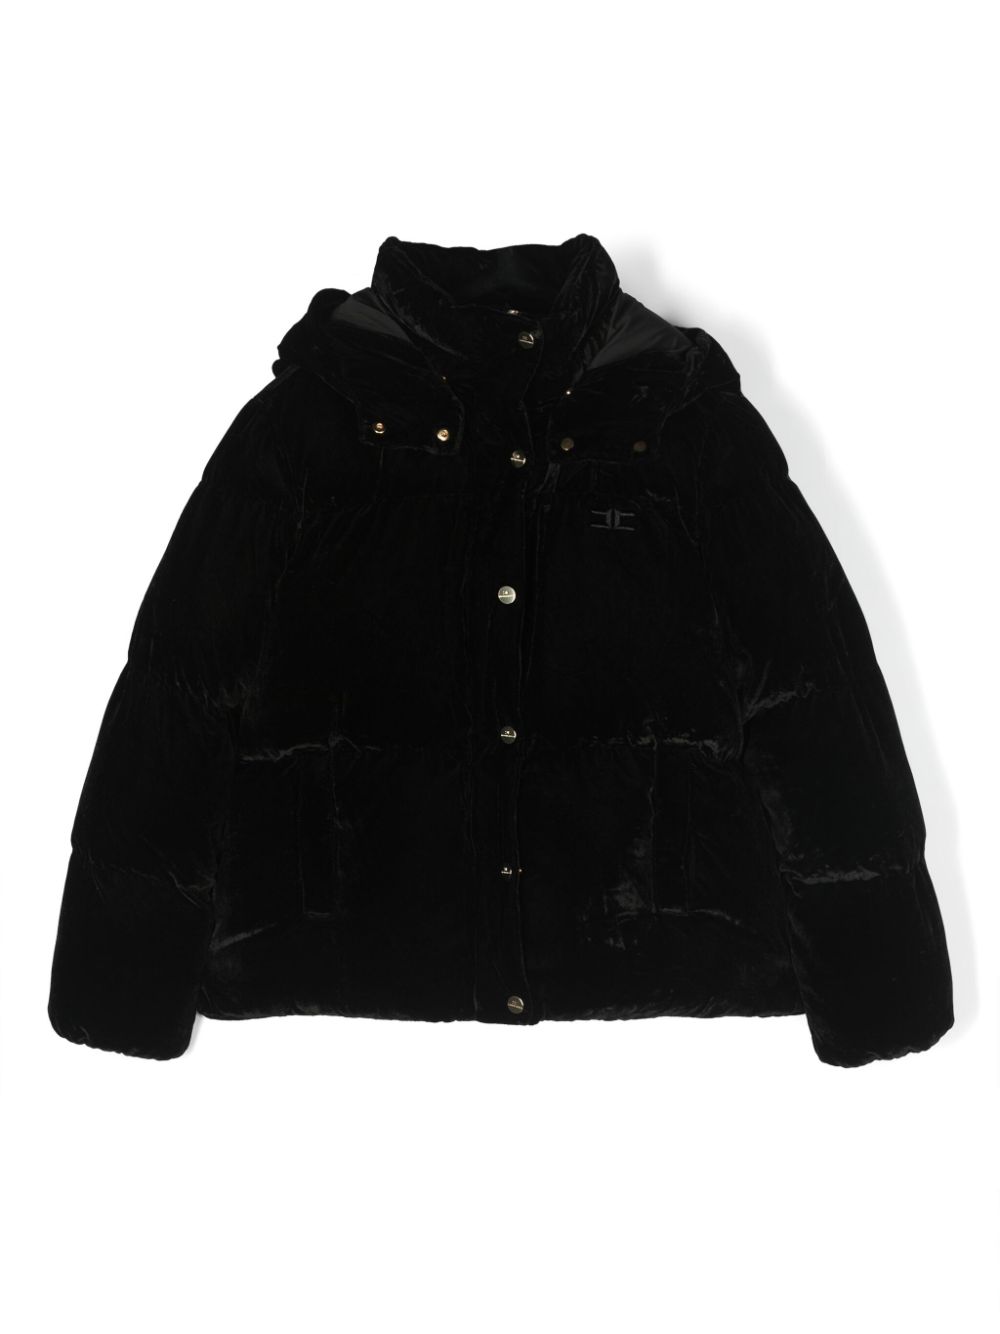 Black velvet bomber jacket for girls